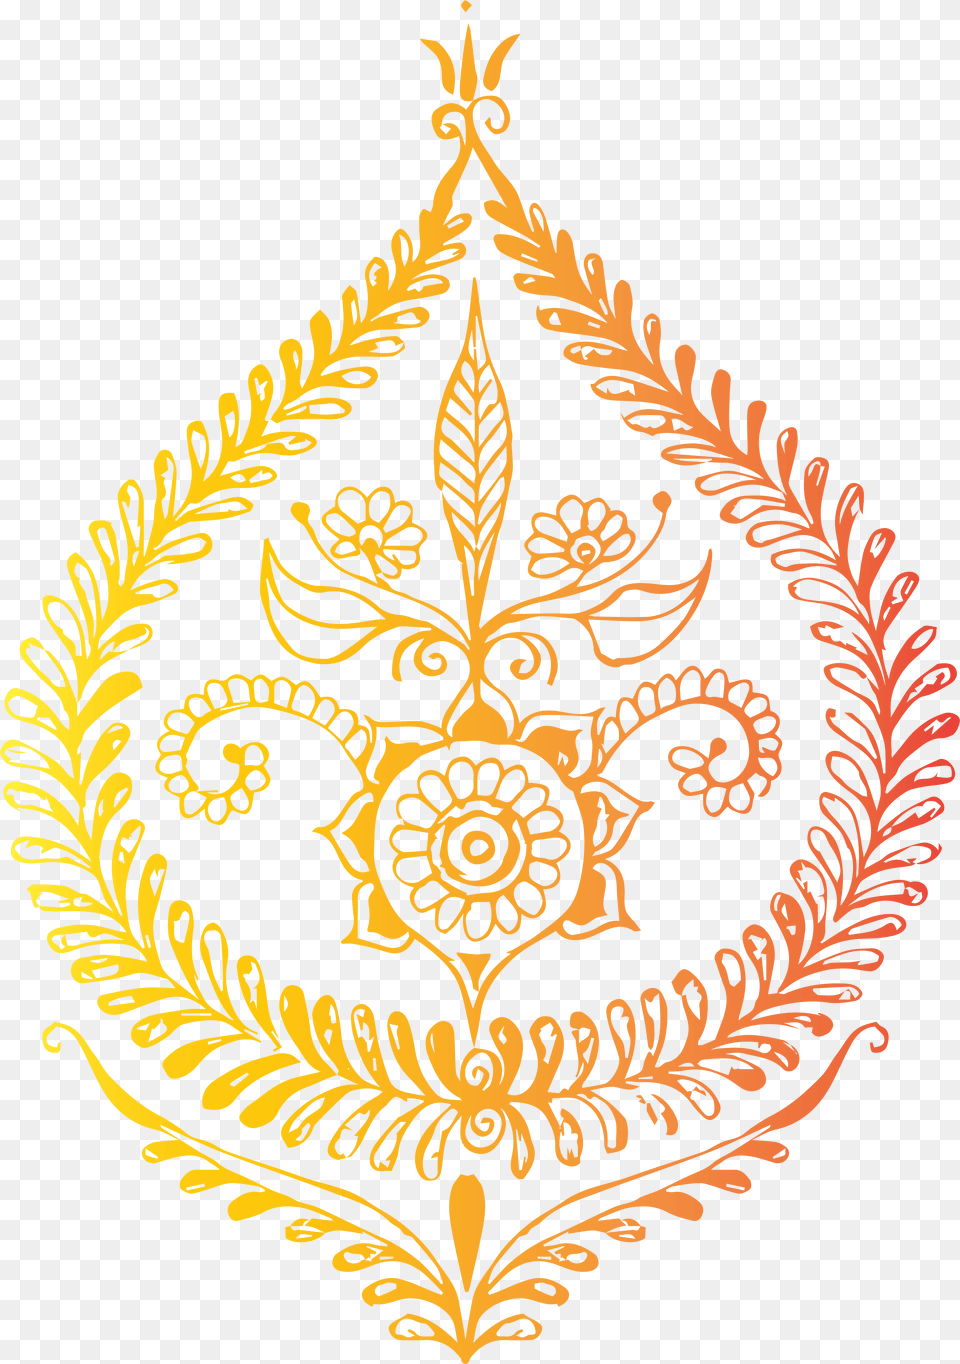 Indian Design Indian Decoration, Art, Floral Design, Graphics, Pattern Png Image